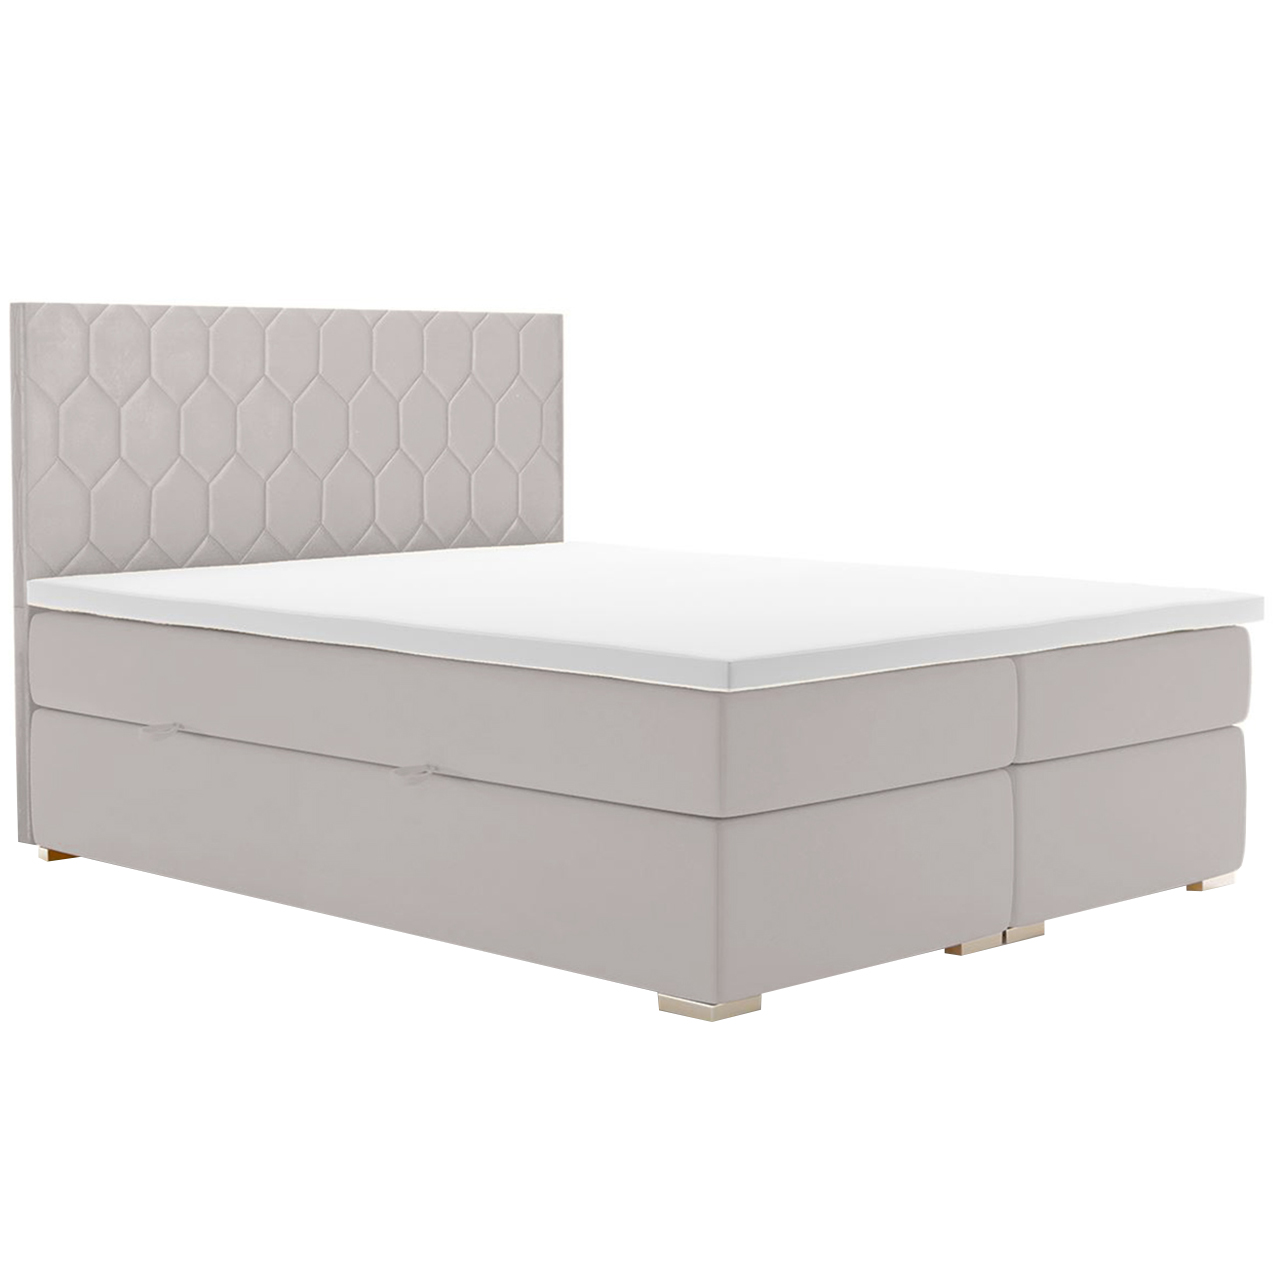 Upholstered bed PILATES 120x200 magic velvet 2218